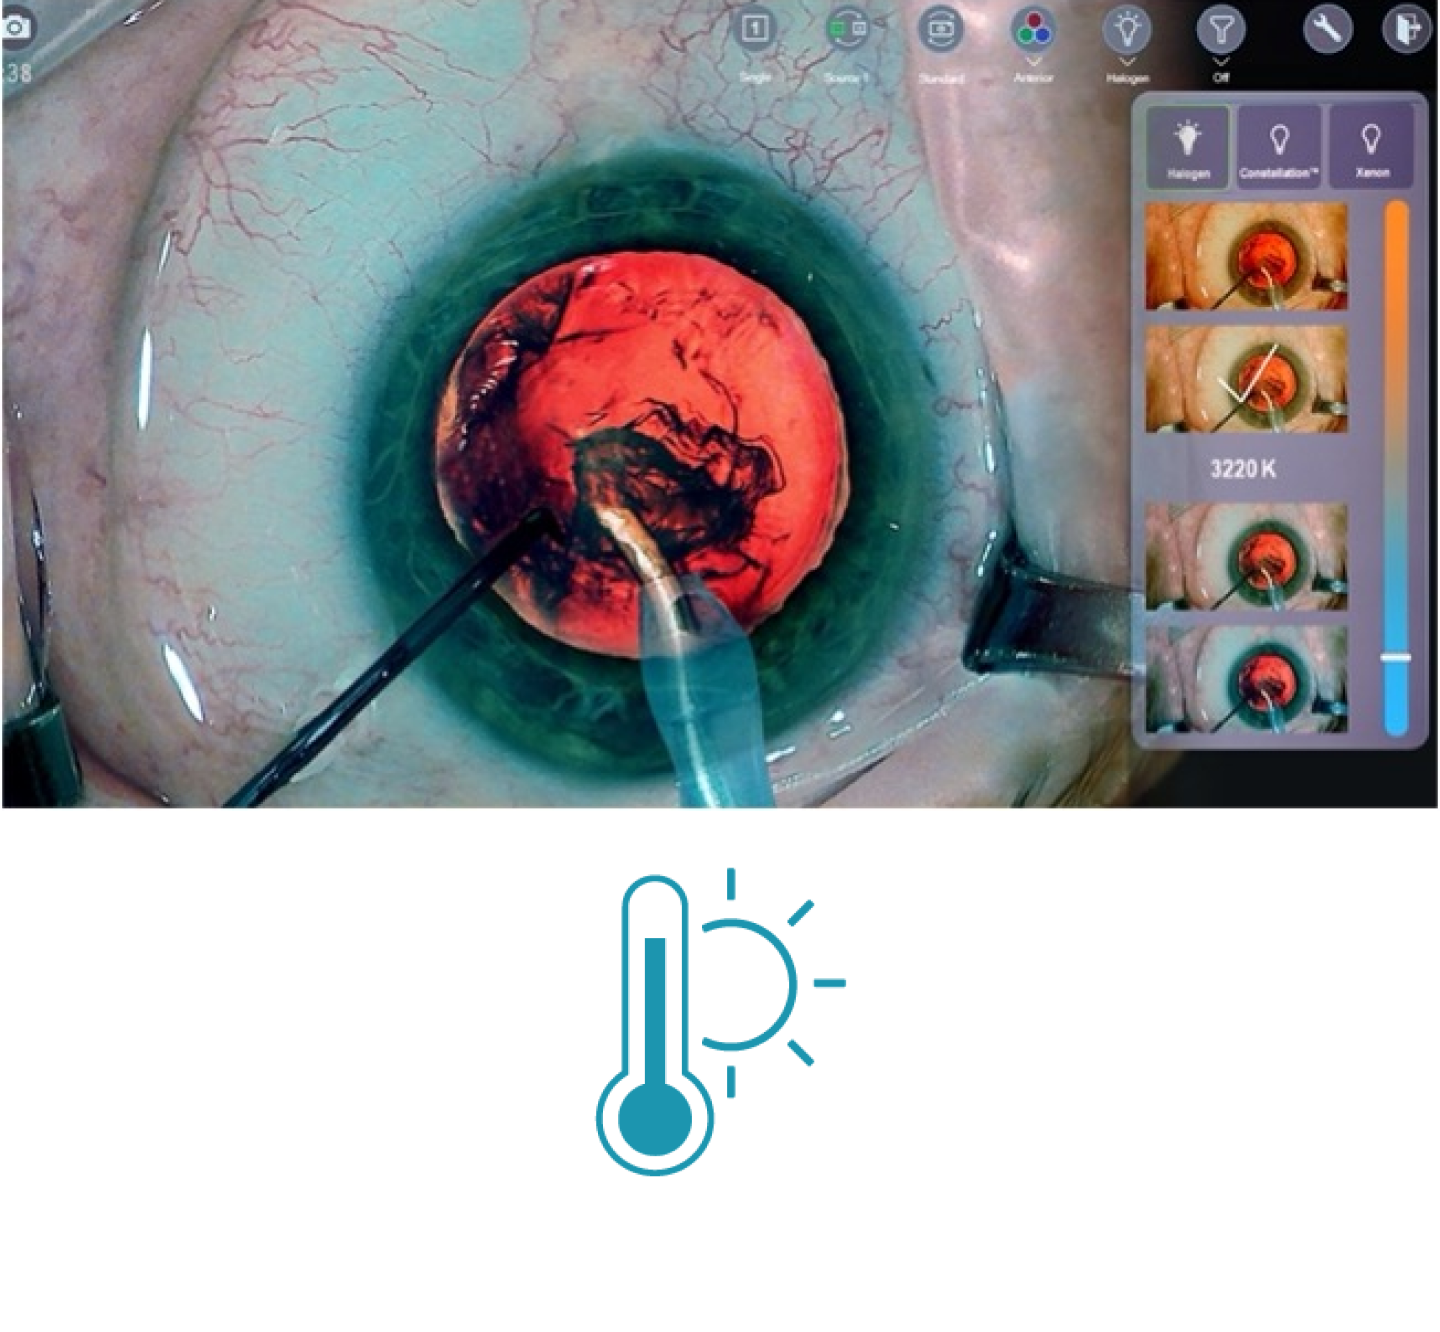 手術中の目のクローズアップ画像、画面には手術道具が表示されている。 画面右側のサムネイルには、NGENUITY 3Dビジュアリゼーションシステムで利用できる様々な光温度フィルターが表示されている